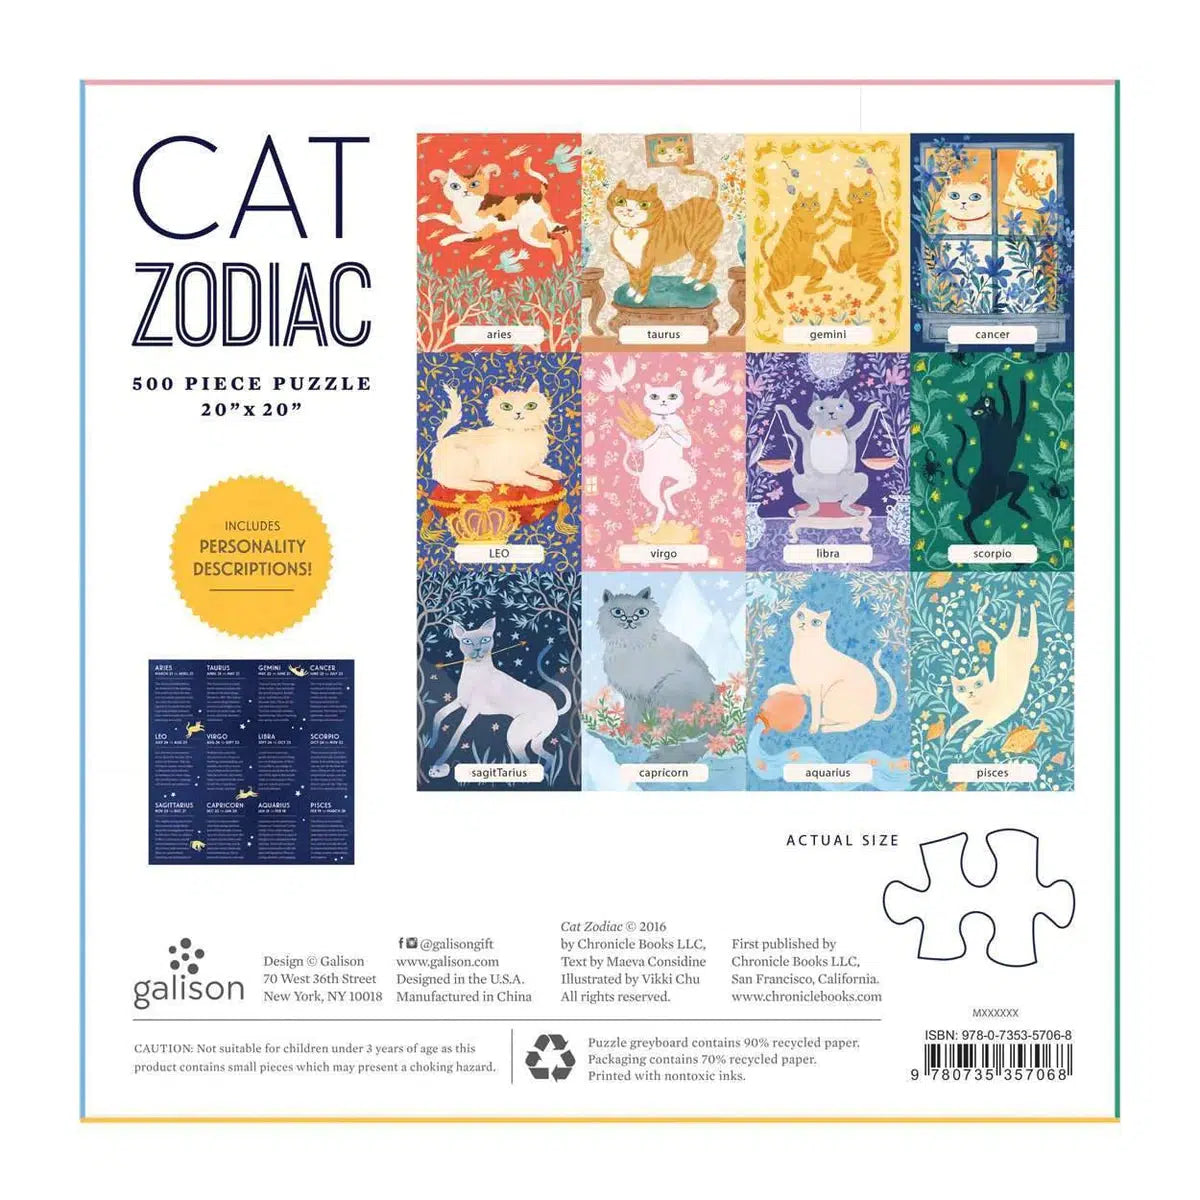 Cat Zodiac 500 Piece Jigsaw Puzzle Galison